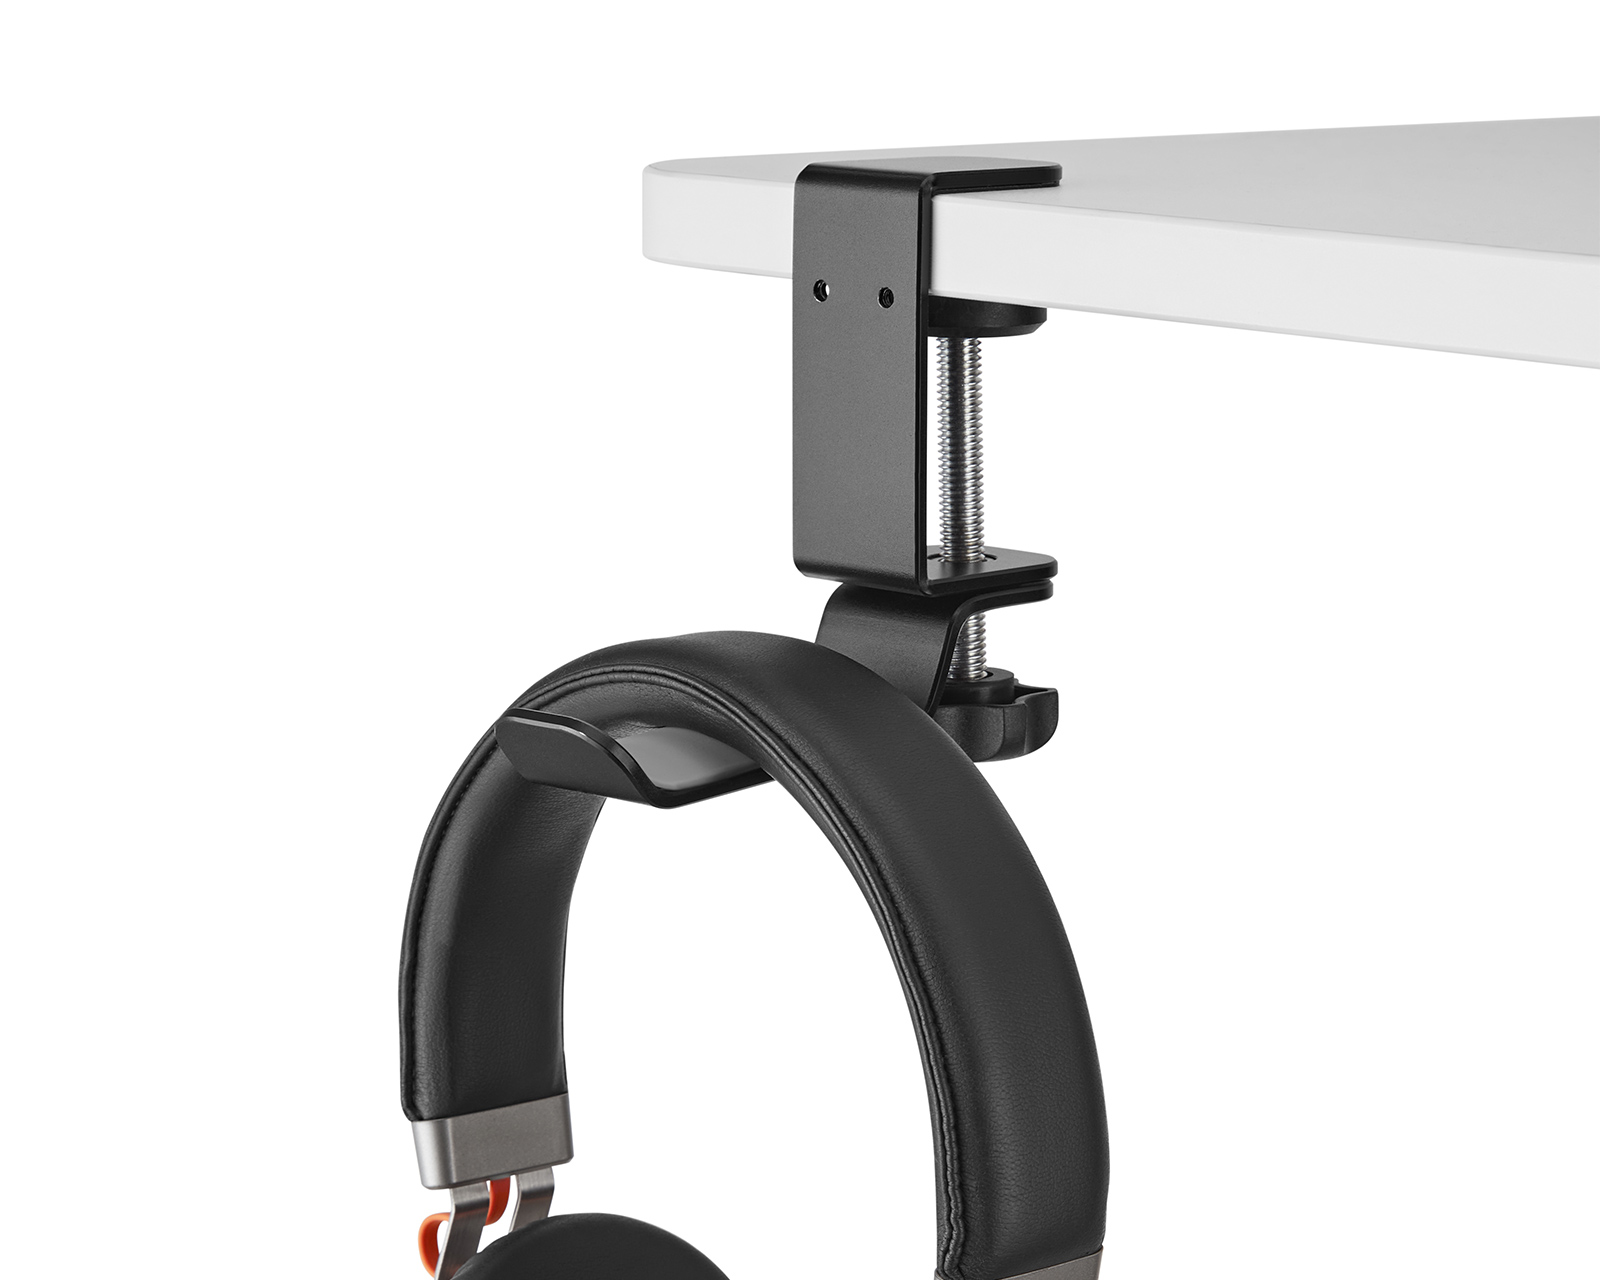 Rounded Headset Holder for Desk